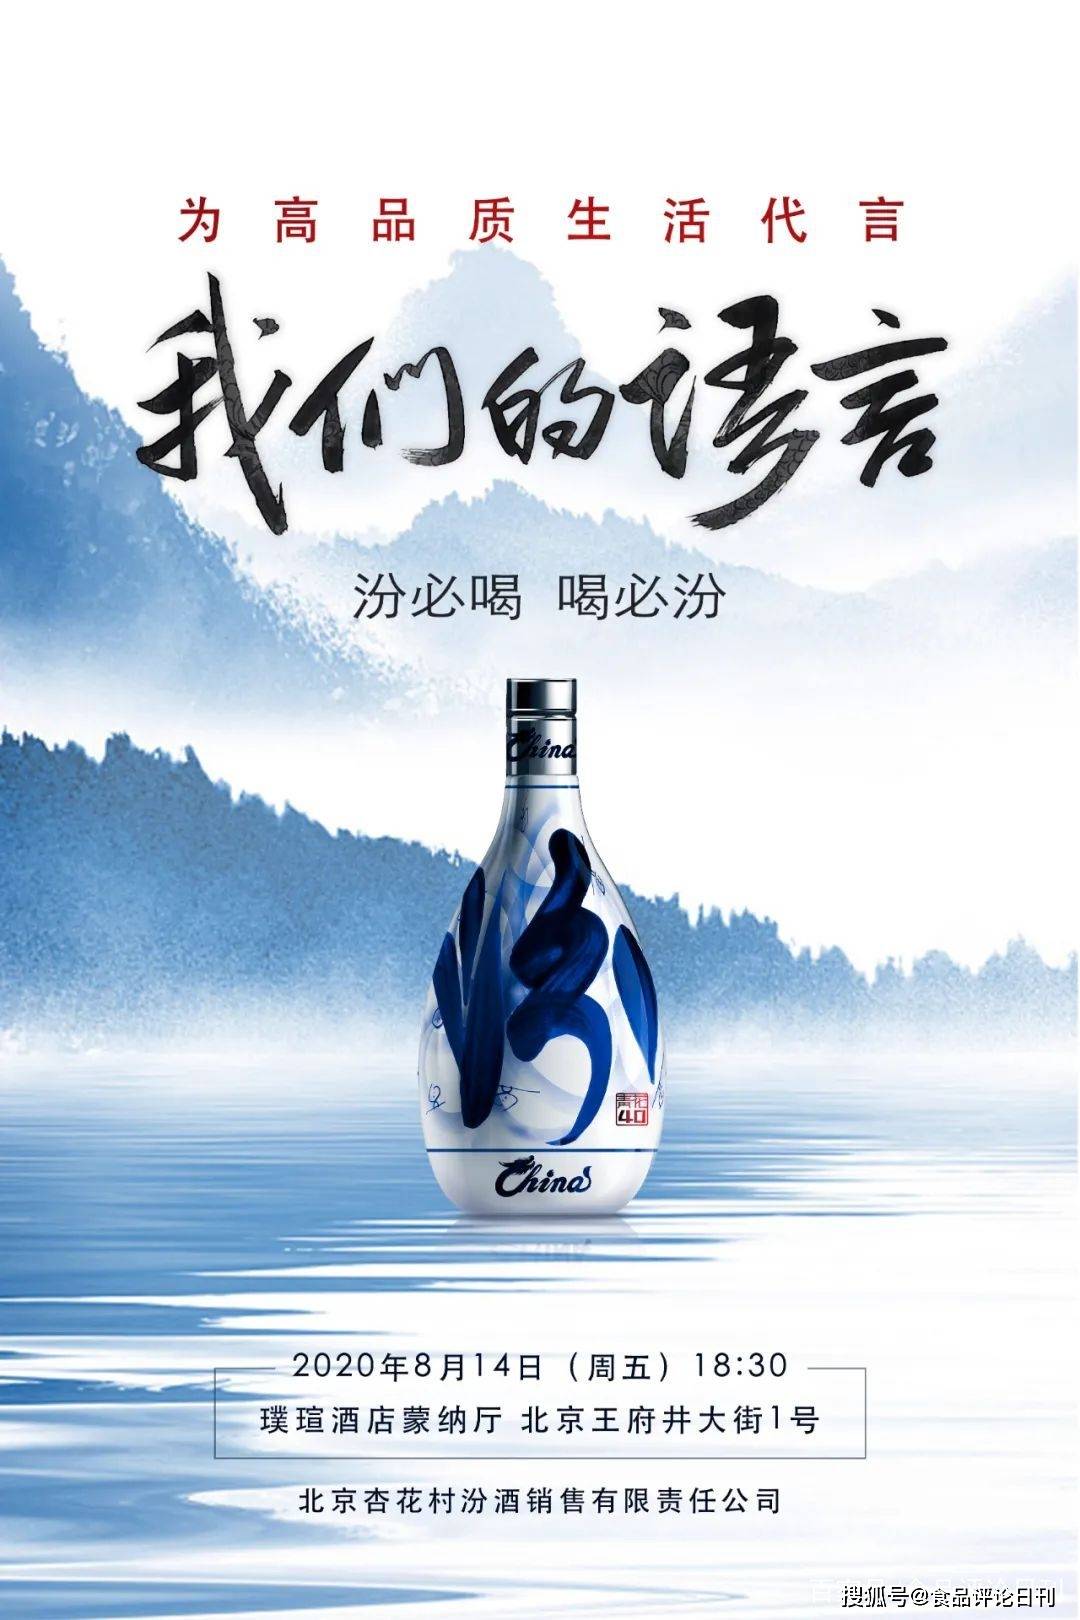 如果我们的语言是汾酒汾酒媒体记录中国白酒语言